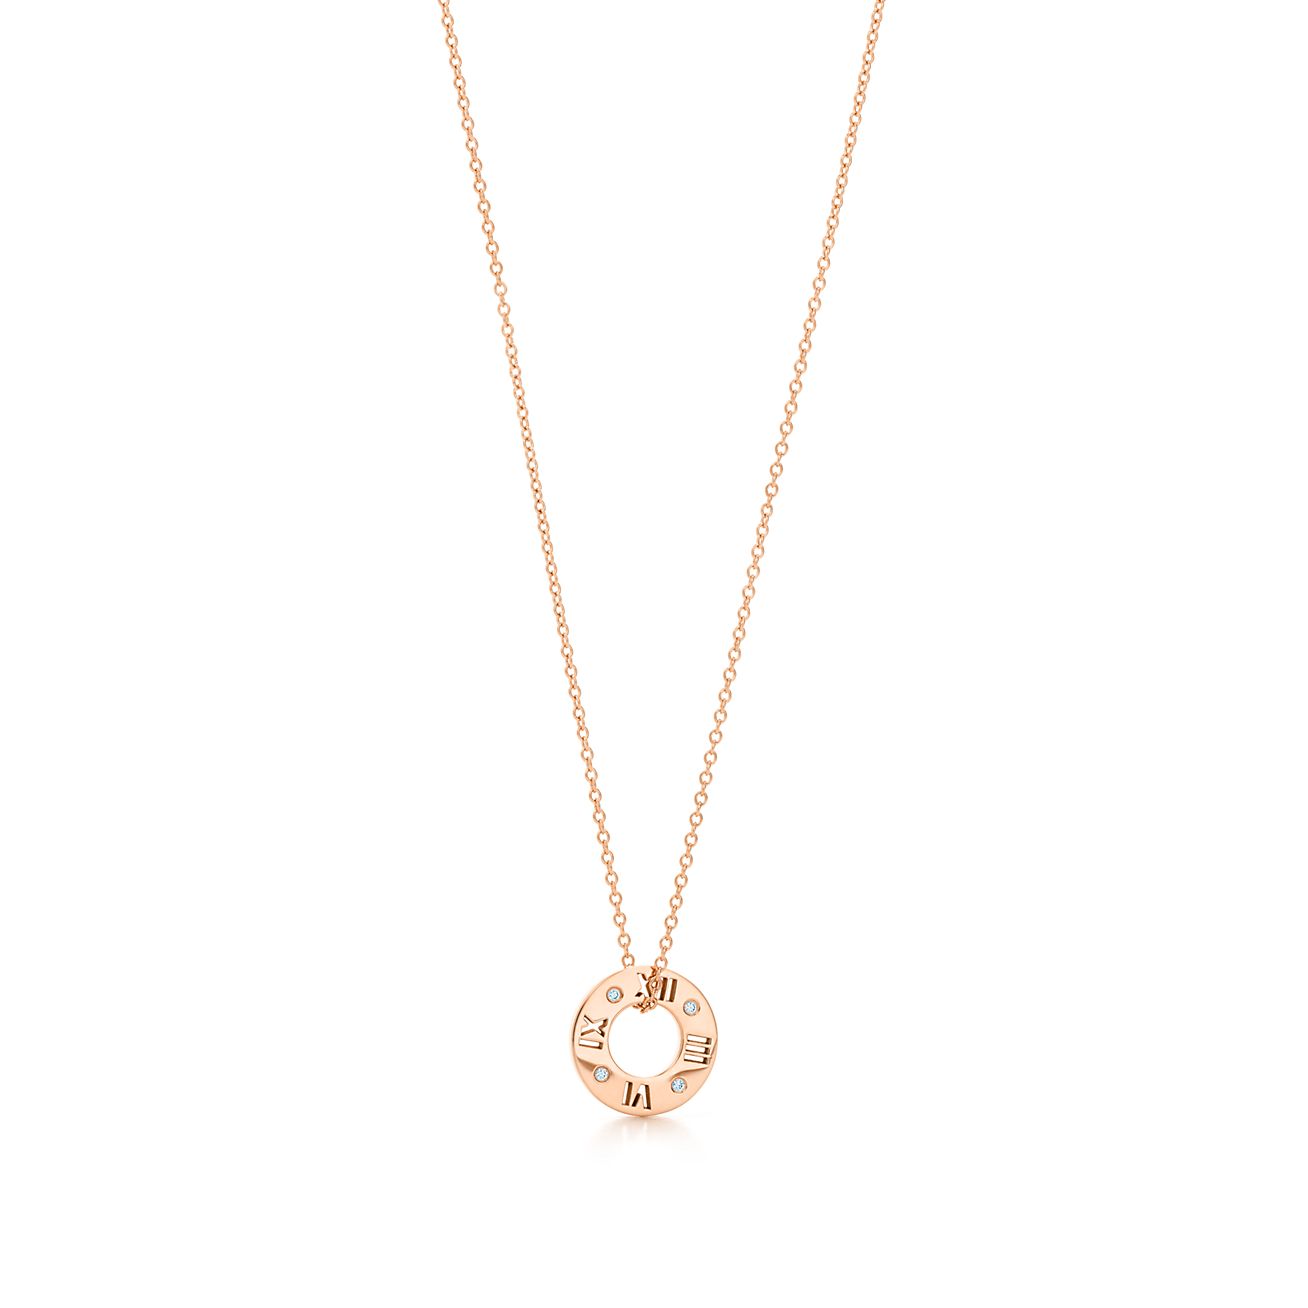 Atlas® pierced pendant in 18k rose gold 